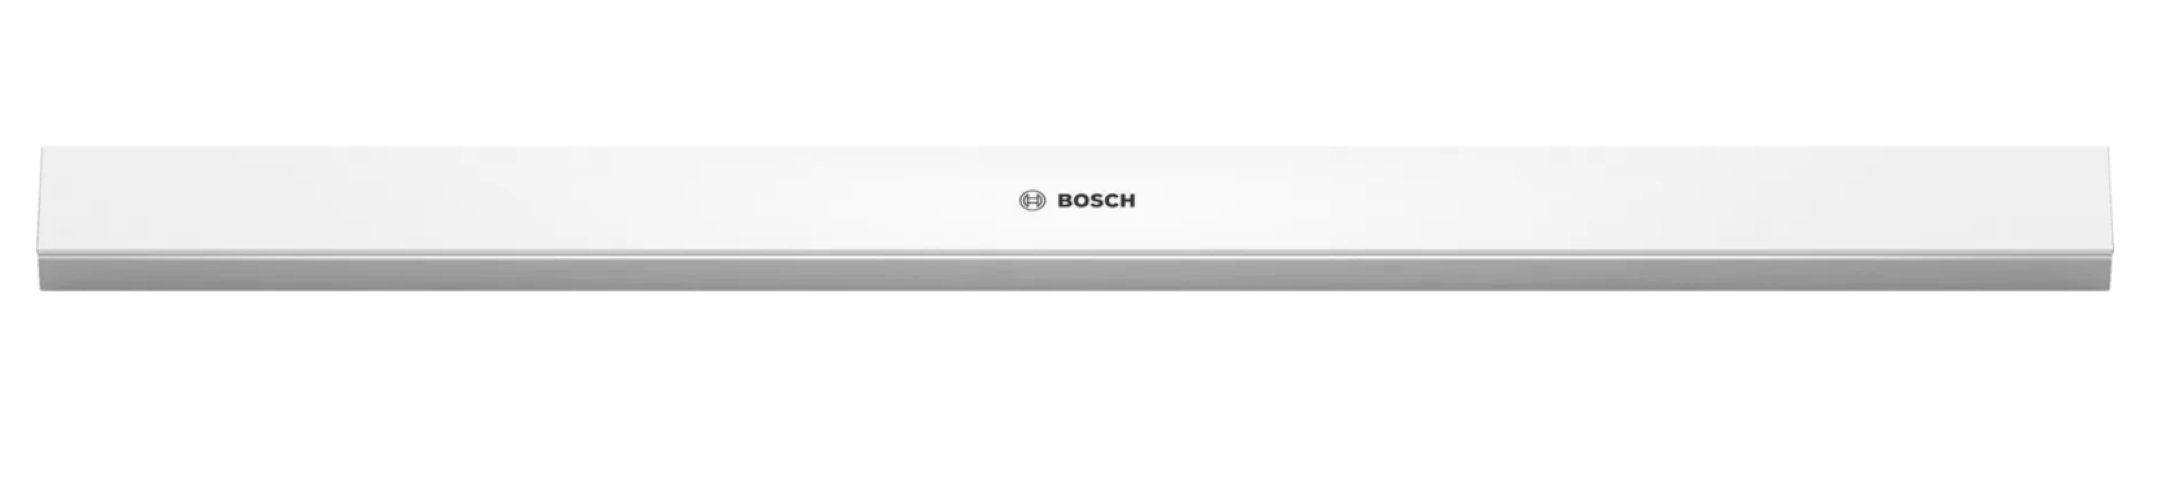 BOSCH Montagezubehör Dunstabzugshaube DSZ4682 Griffleiste Weiss 60 cm für Flachschirmhauben